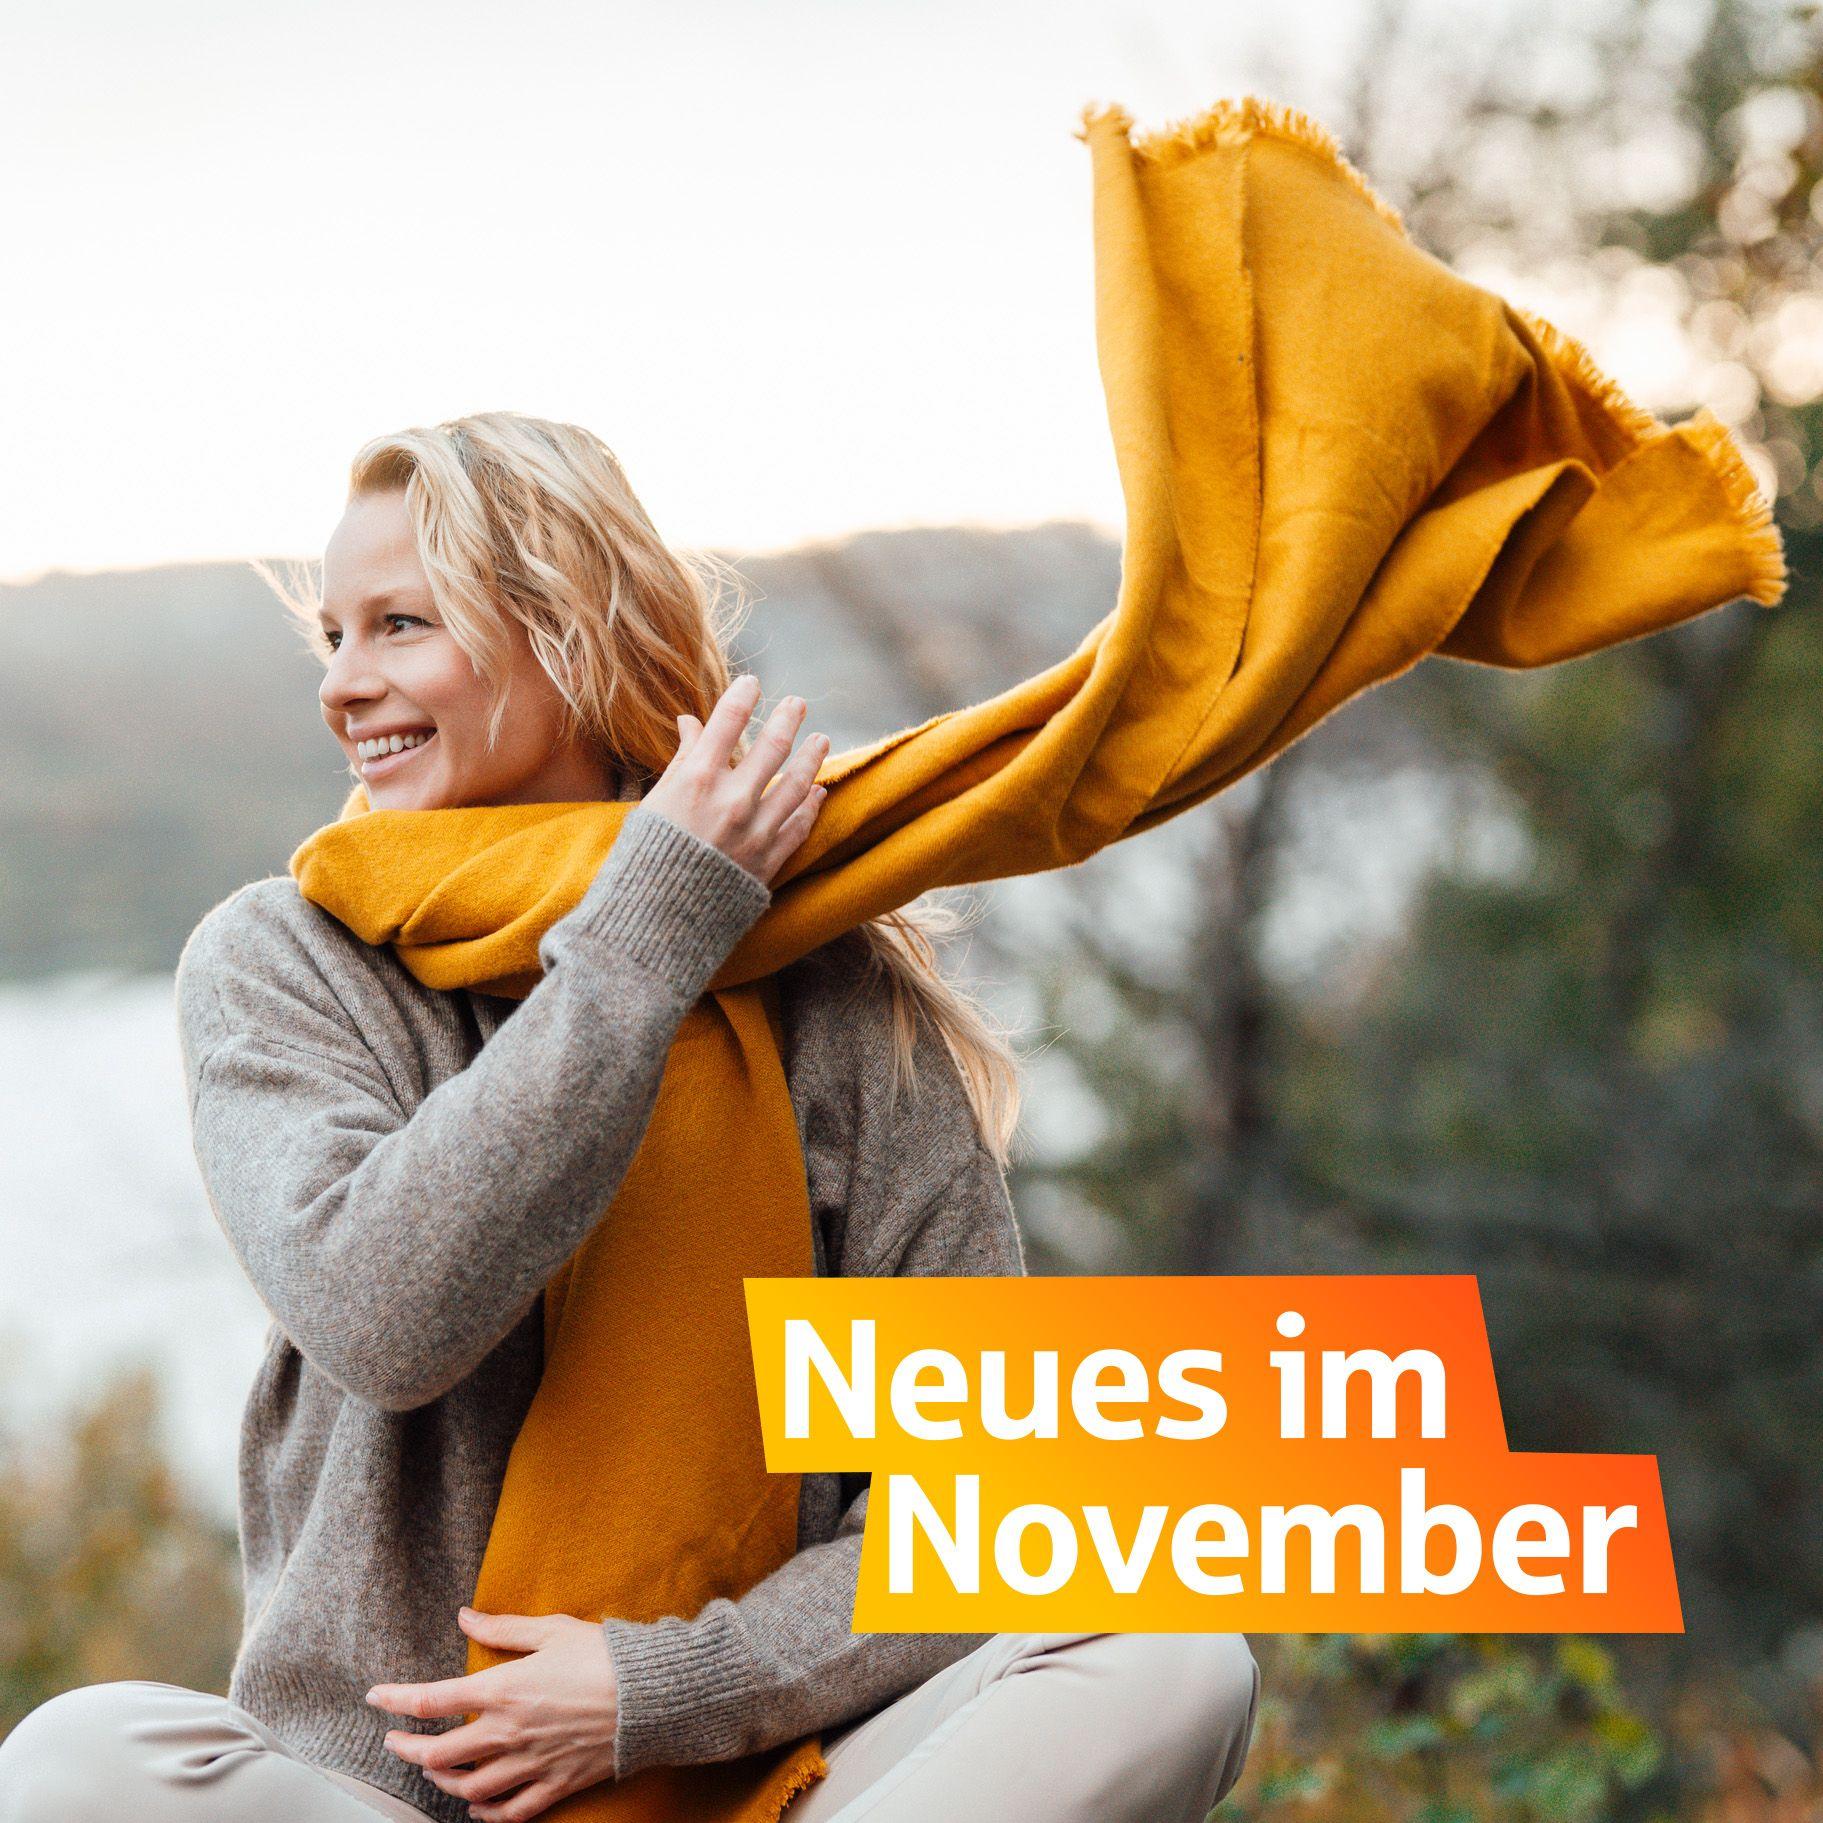 Eine lächende Frau wirft ihren gelben Schal über die Schulter. Unten rechts steht "Neues im November"